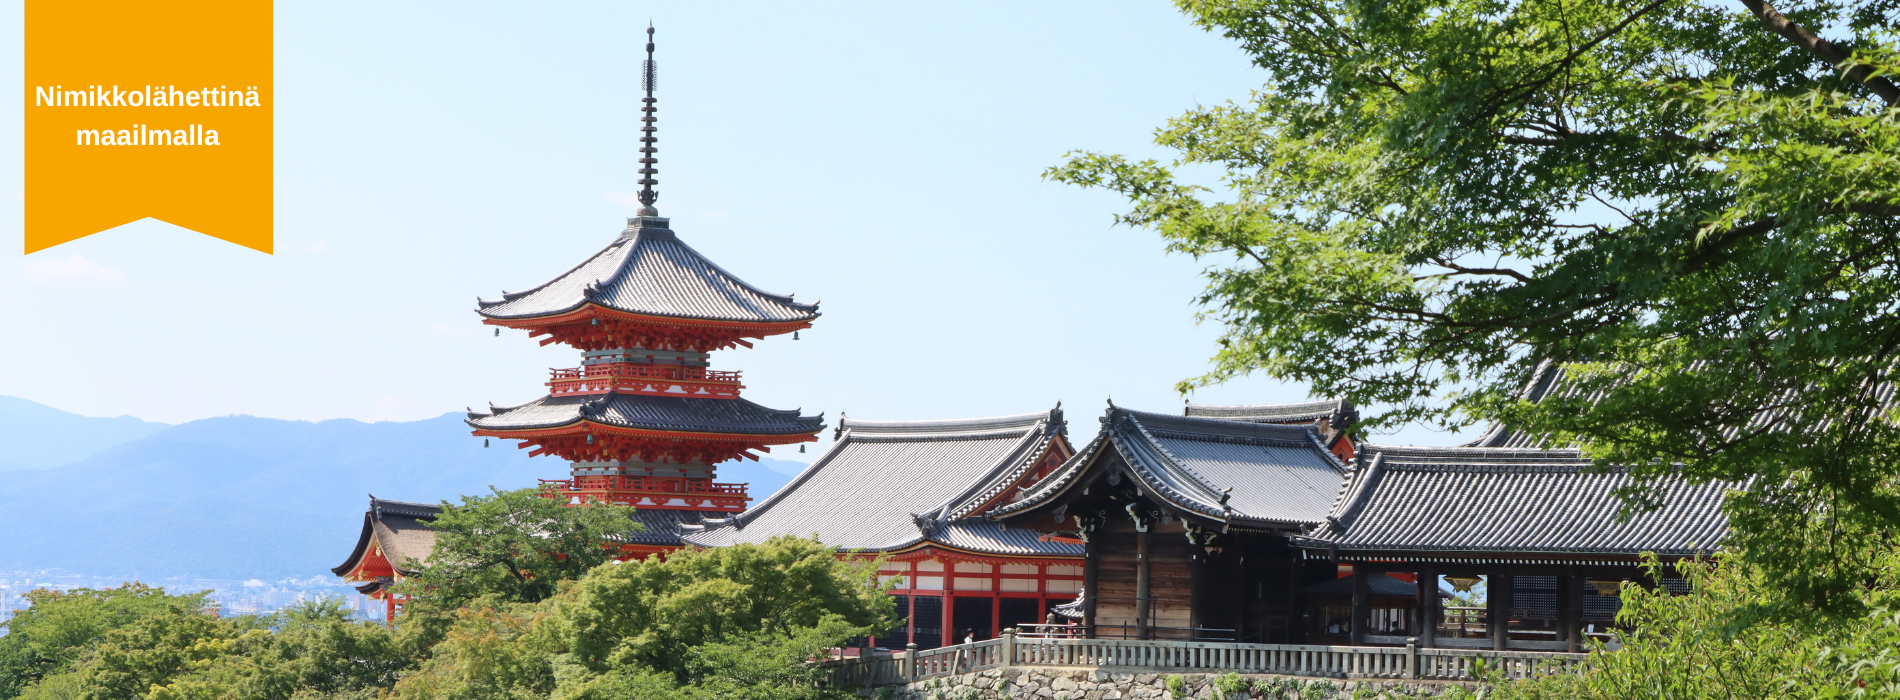 Nimikkolähettinä maailmalla, taustalla kuva japanilaisesta temppelistä